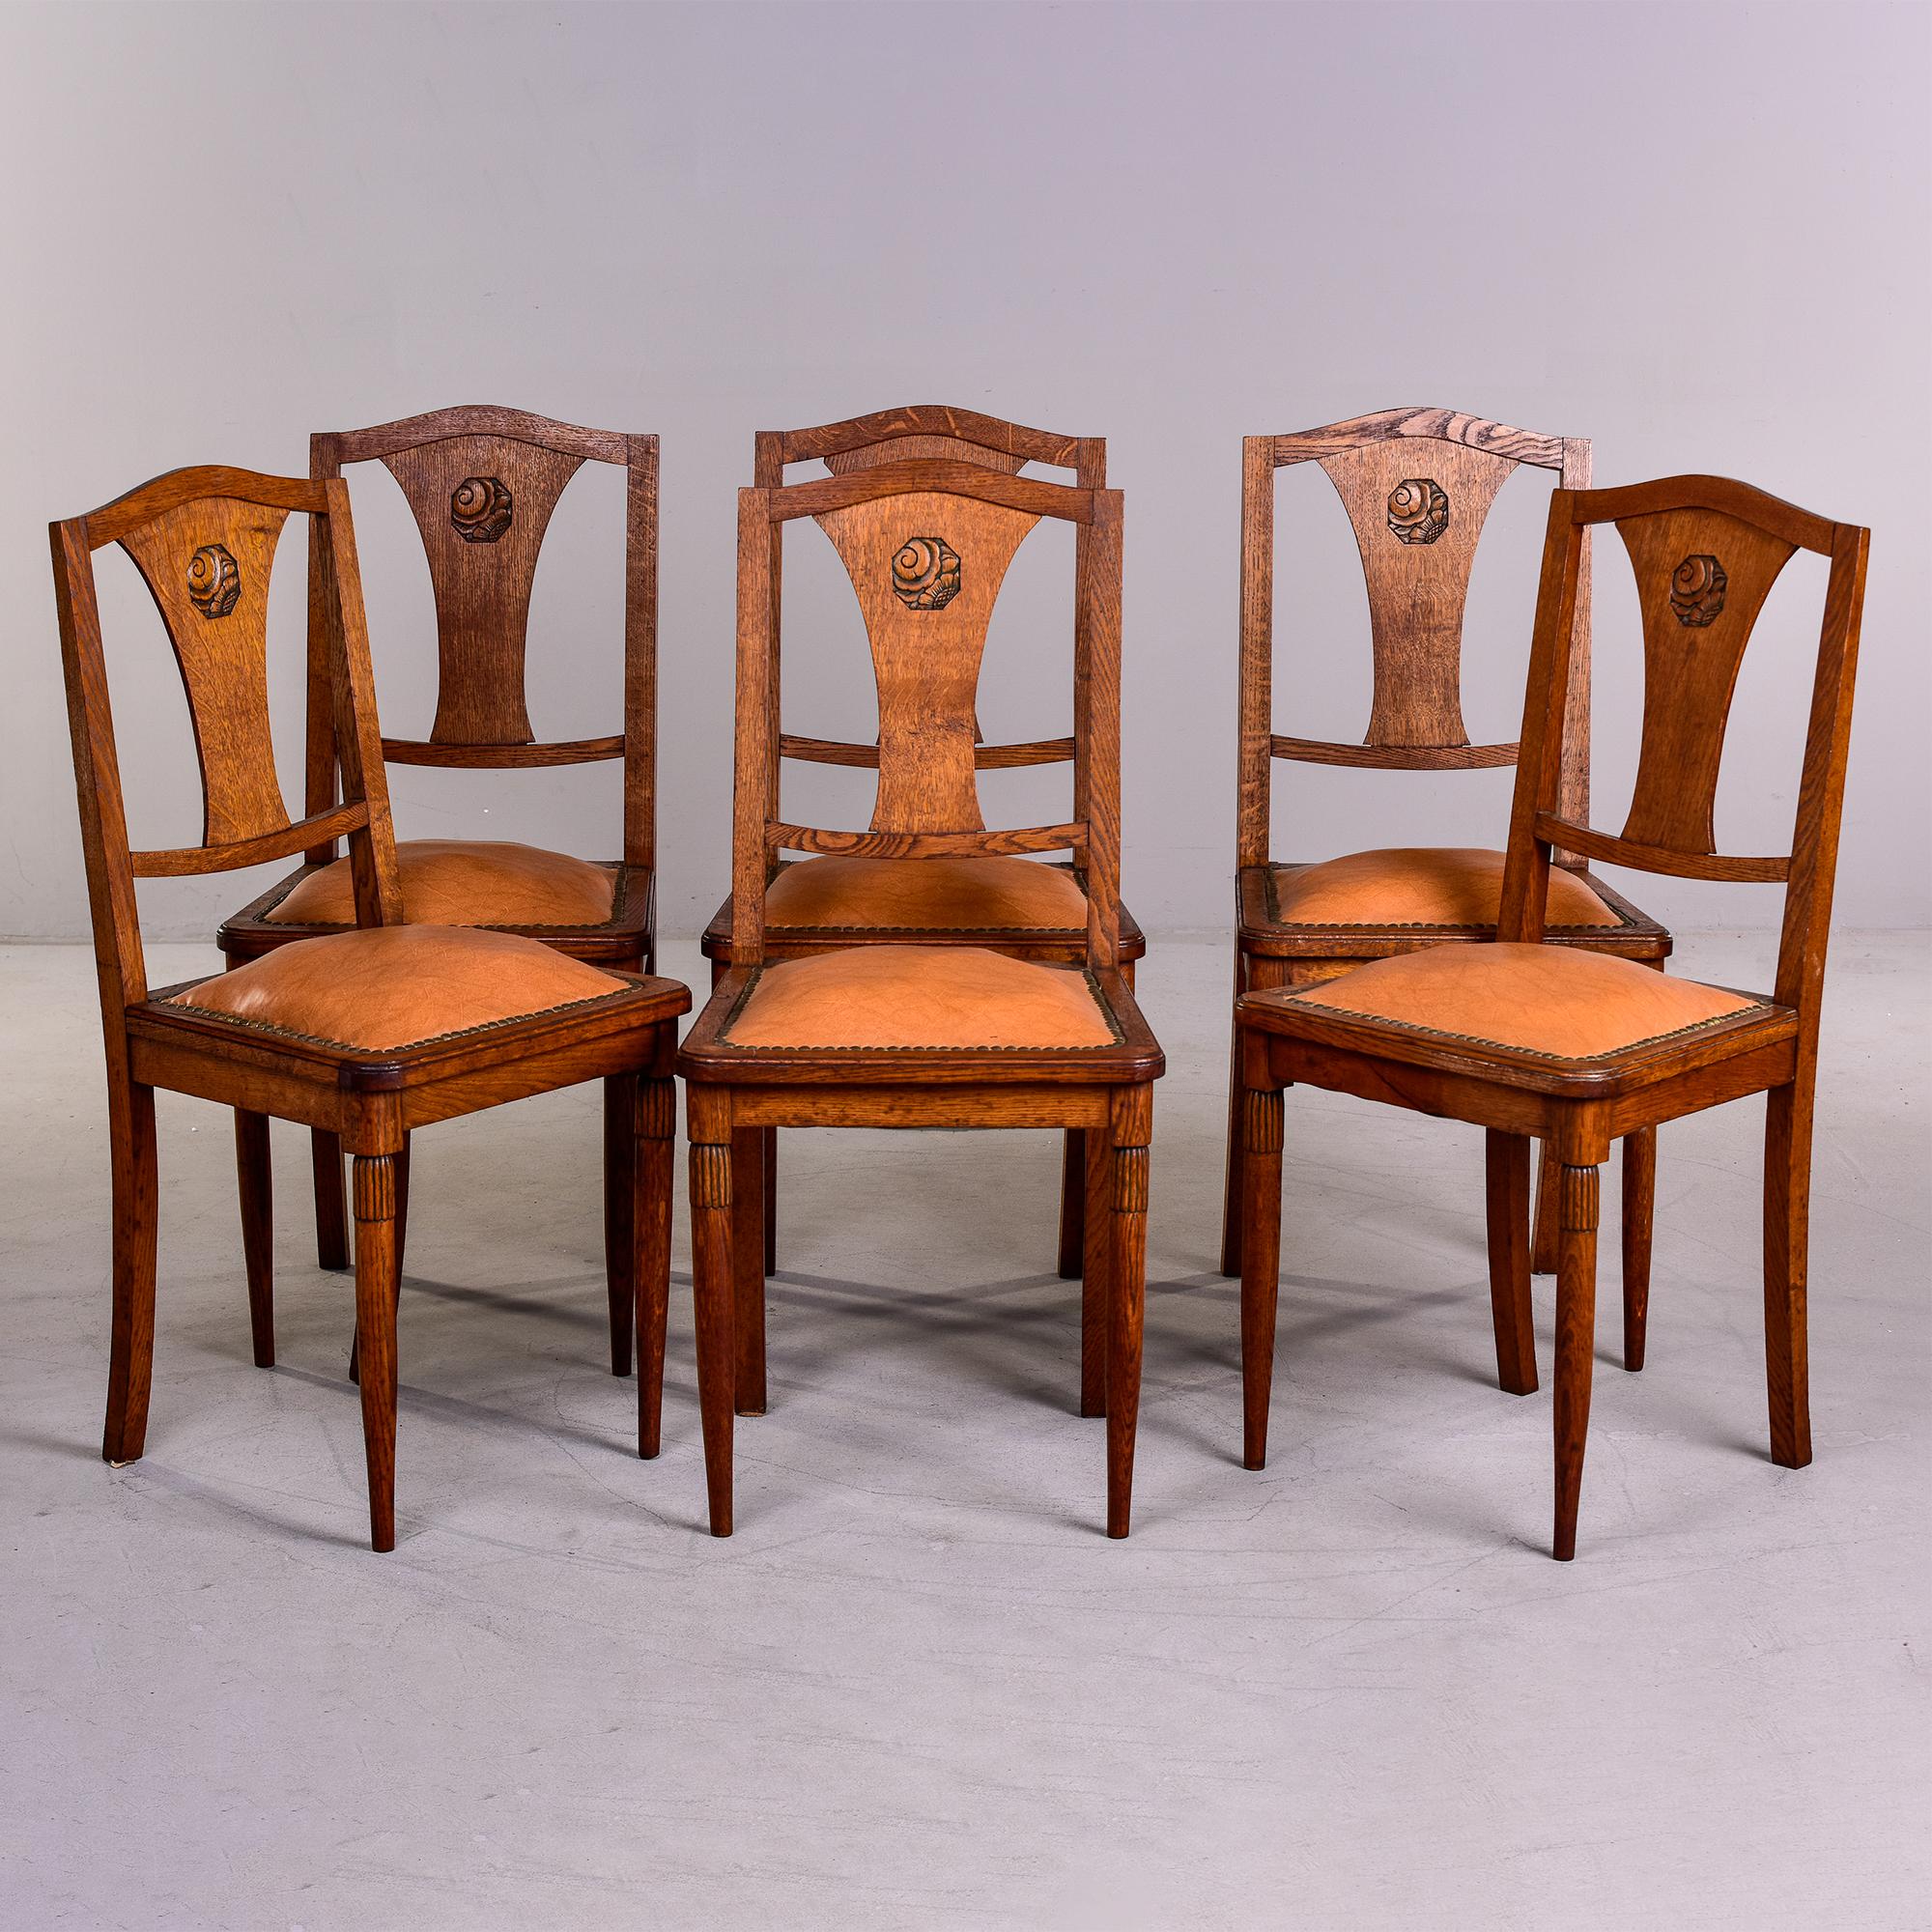 Sechs Esszimmerstühle aus französischer Eiche, um 1920, die Majorelle zugeschrieben werden. Erworben aus einem französischen Nachlass - der Esstisch, den sie umgaben, war ein dokumentiertes Majorelle-Stück und die Besitzer behaupteten, die Stühle